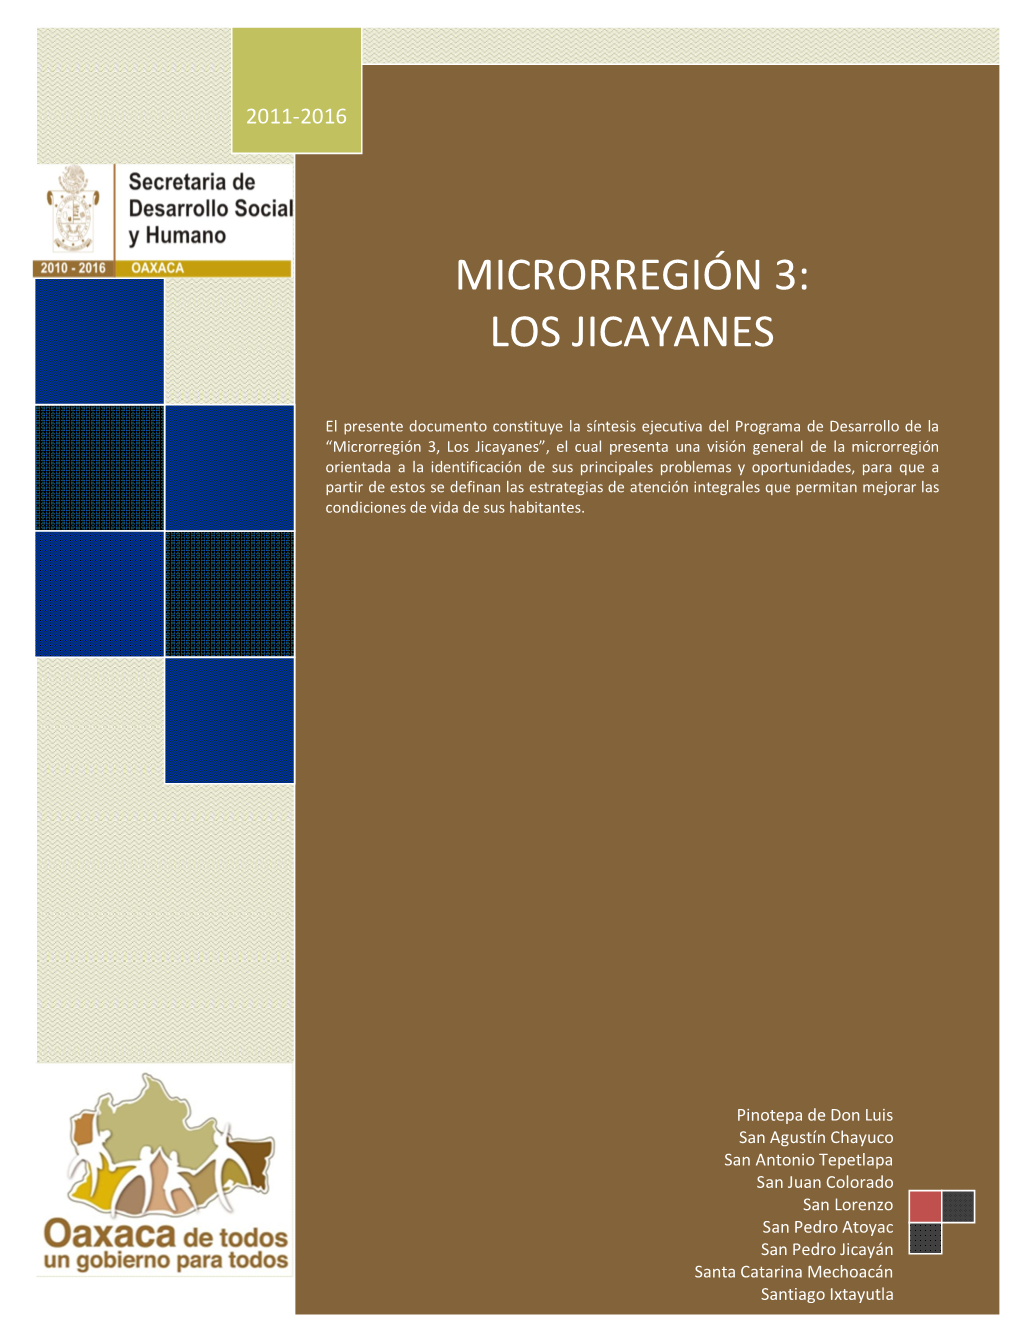 Microrregión 3: Los Jicayanes